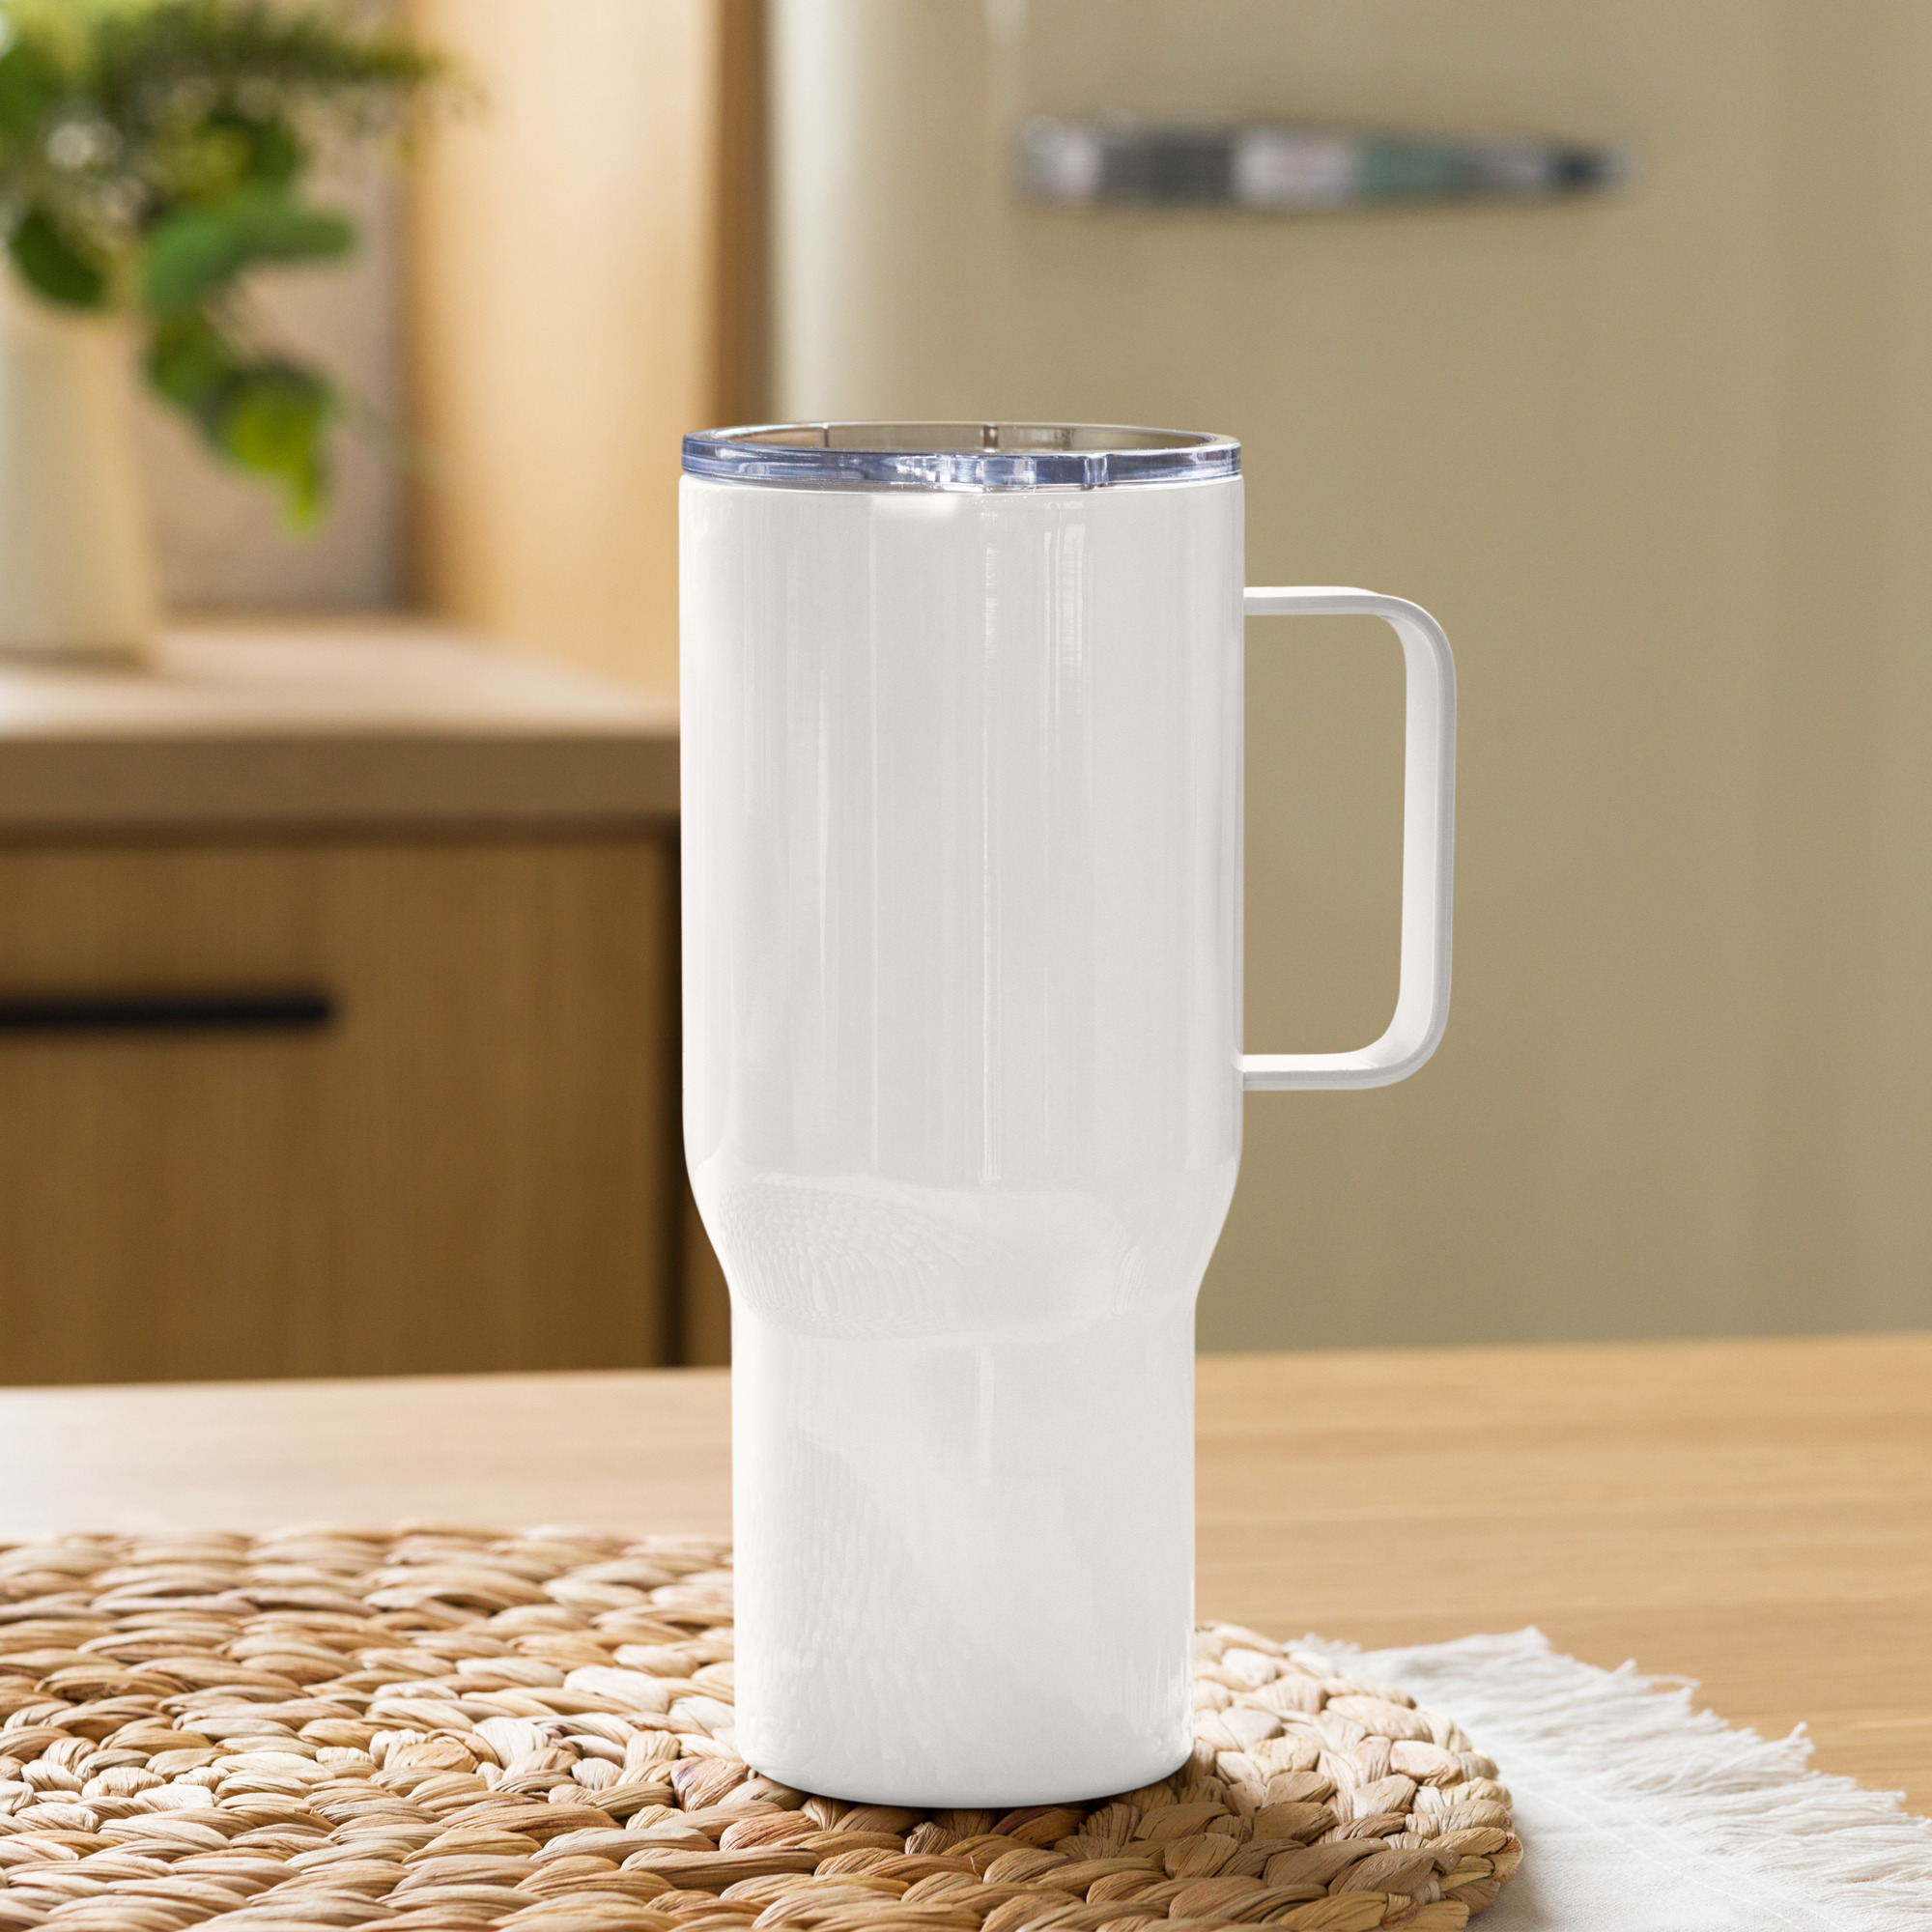 travel-mug-with-a-handle-white-25-oz-left-65b6ded705e98.jpg